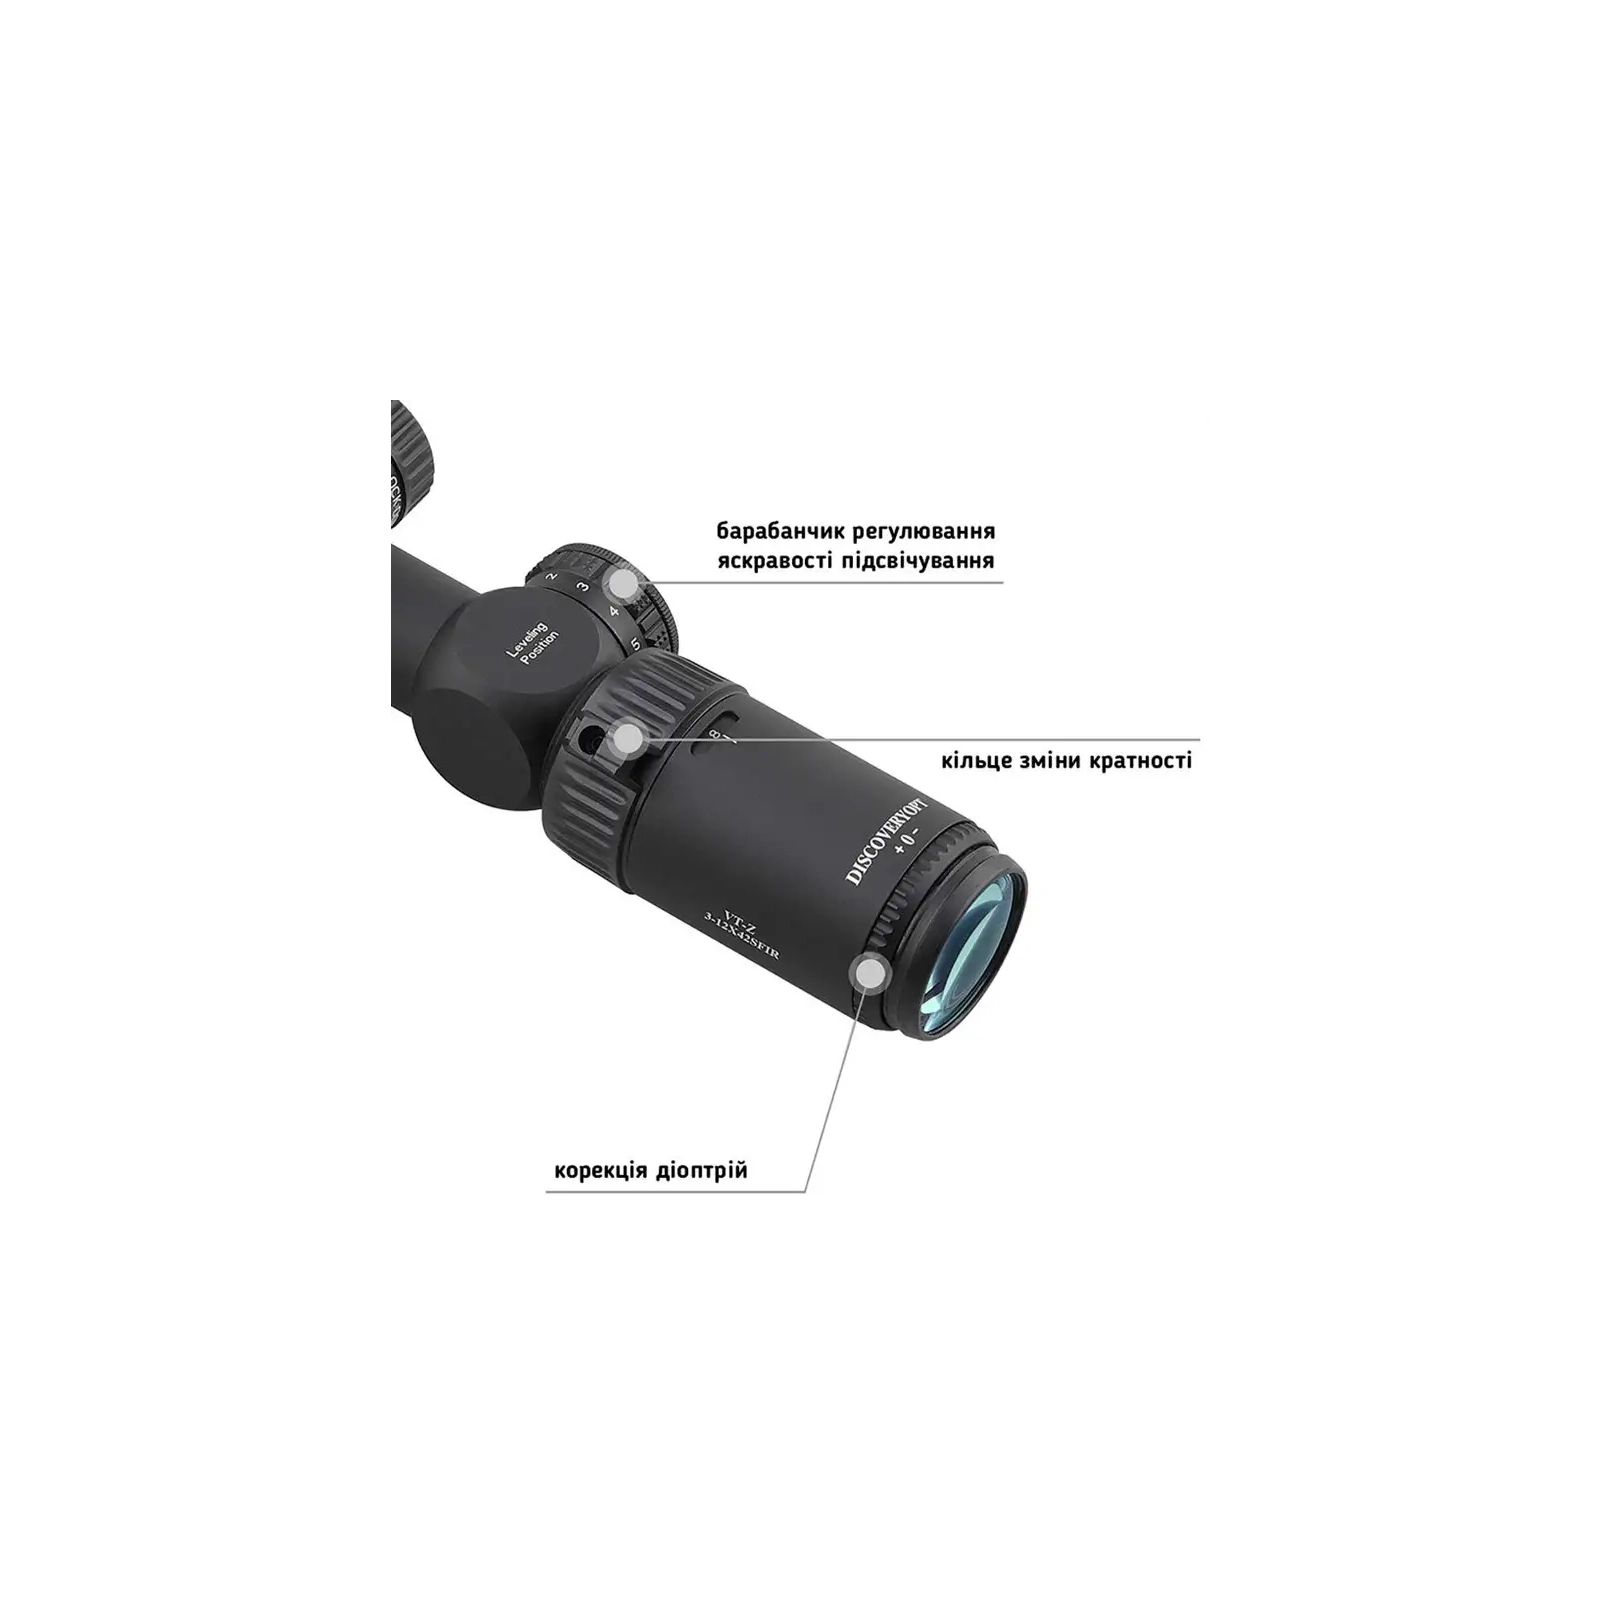 Оптический прицел Discovery Optics VT-Z 3-12x42 SFIR сітка HMD з підсвічуванням (Z14.6.31.057) изображение 7